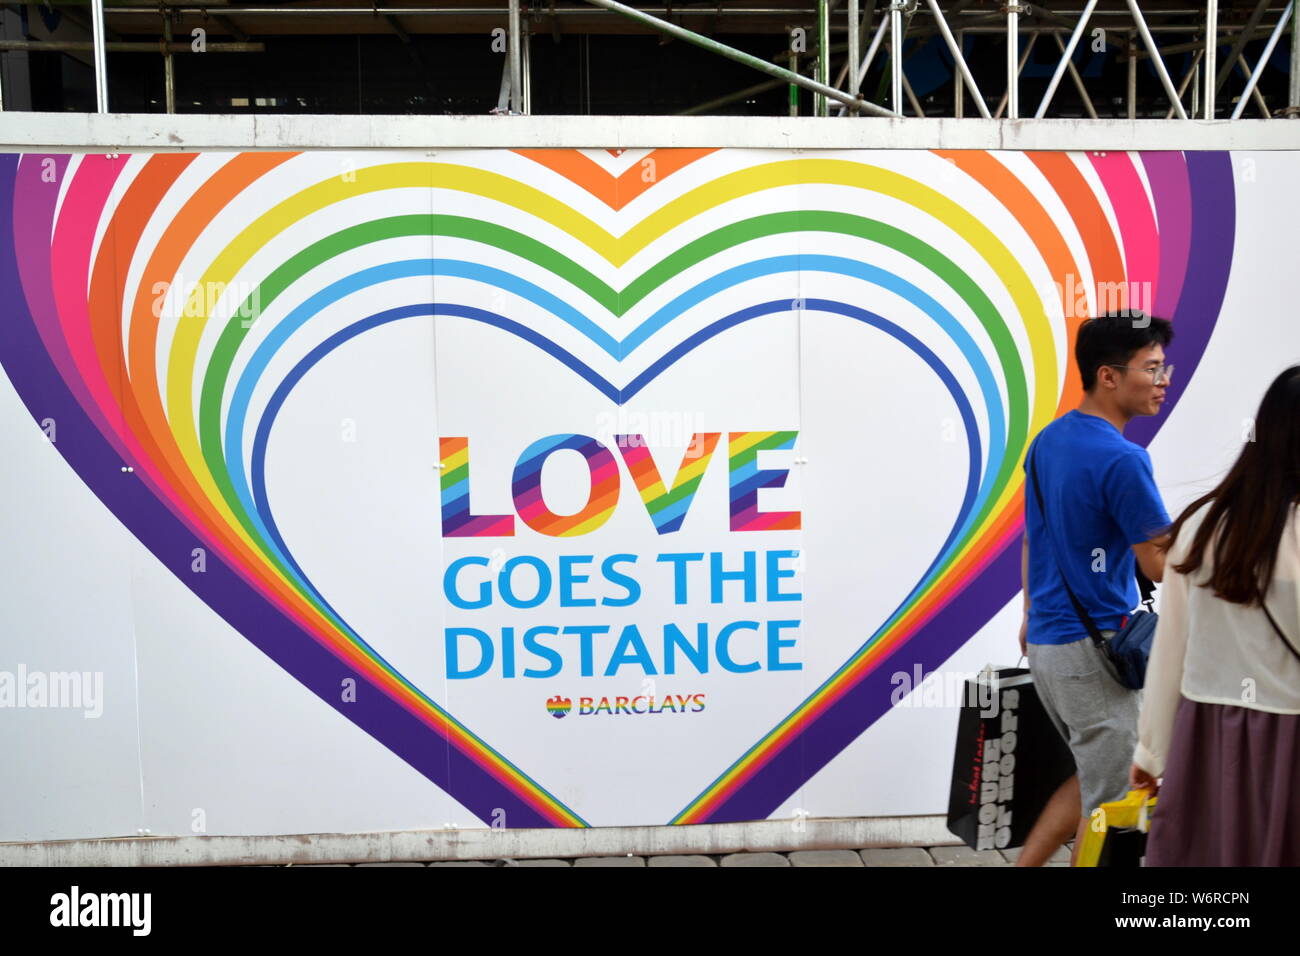 Passerelle-a piedi davanti a un cartello a tema arcobaleno "Love Goes the Distance" sulla Barclays Bank, Market Street, Manchester, Regno Unito, durante il periodo di orgoglio lgbt Foto Stock